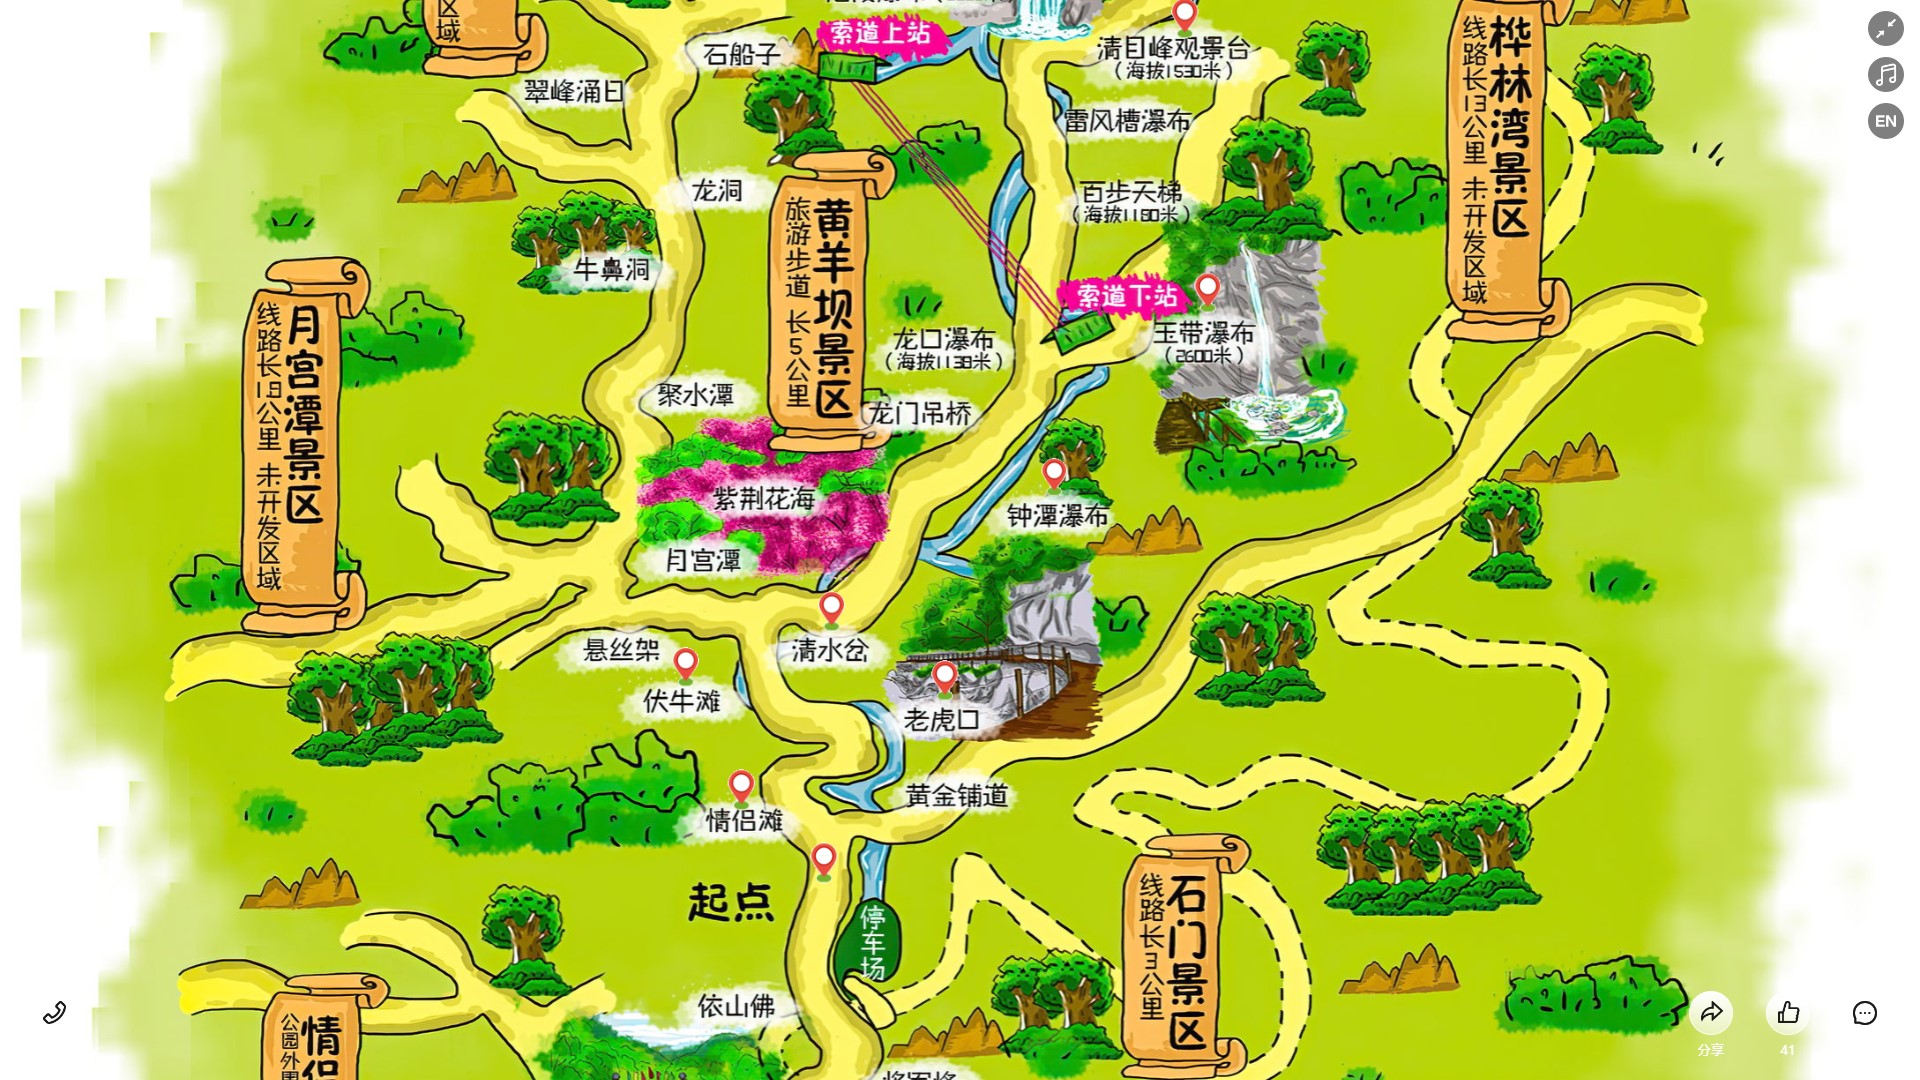 靖州景区导览系统